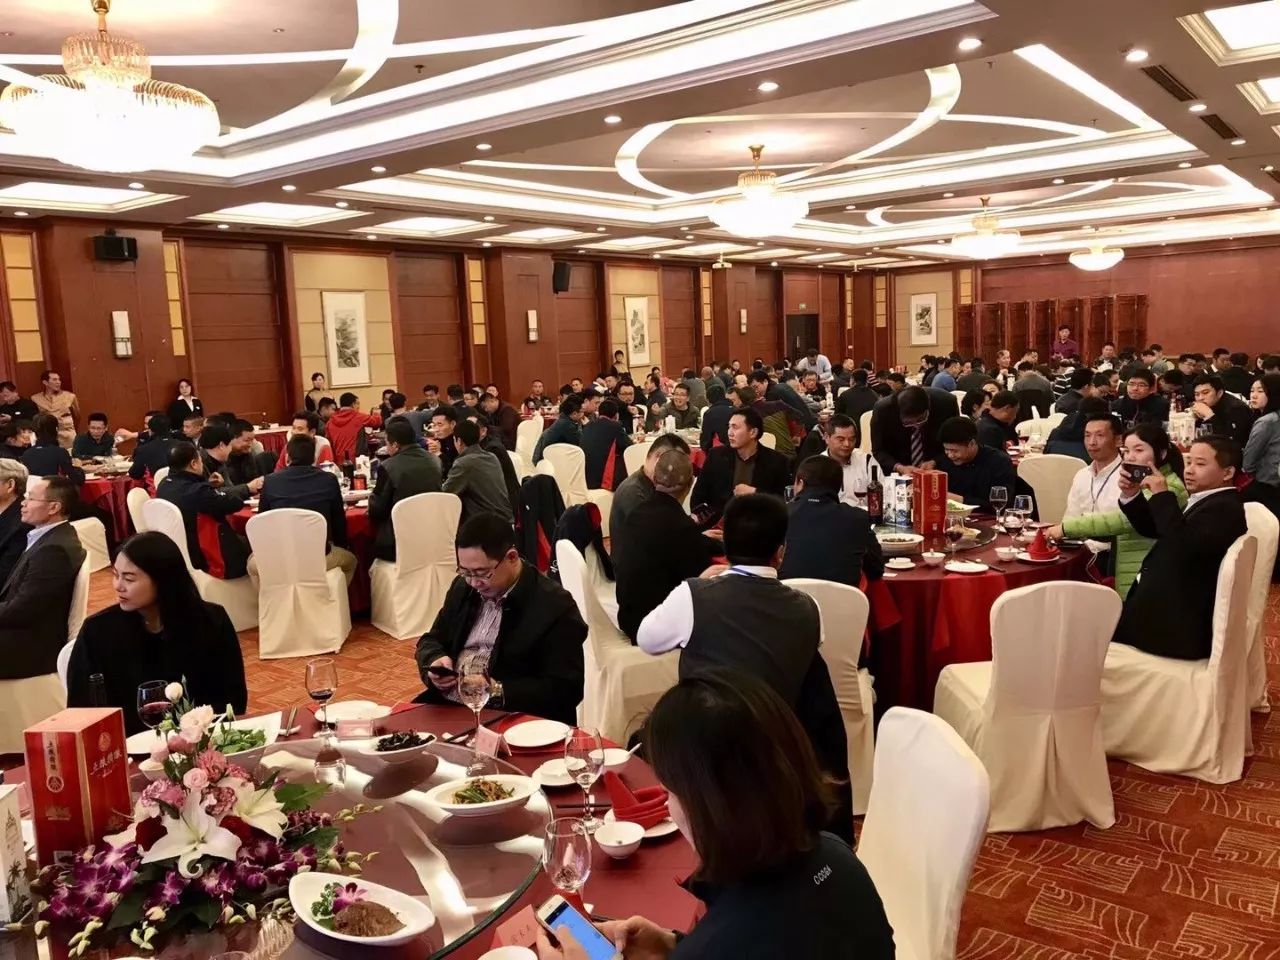 酒店隆重举行了由浙江龙山湖高尔夫俱乐部赞助支持的本次会议欢迎晚宴